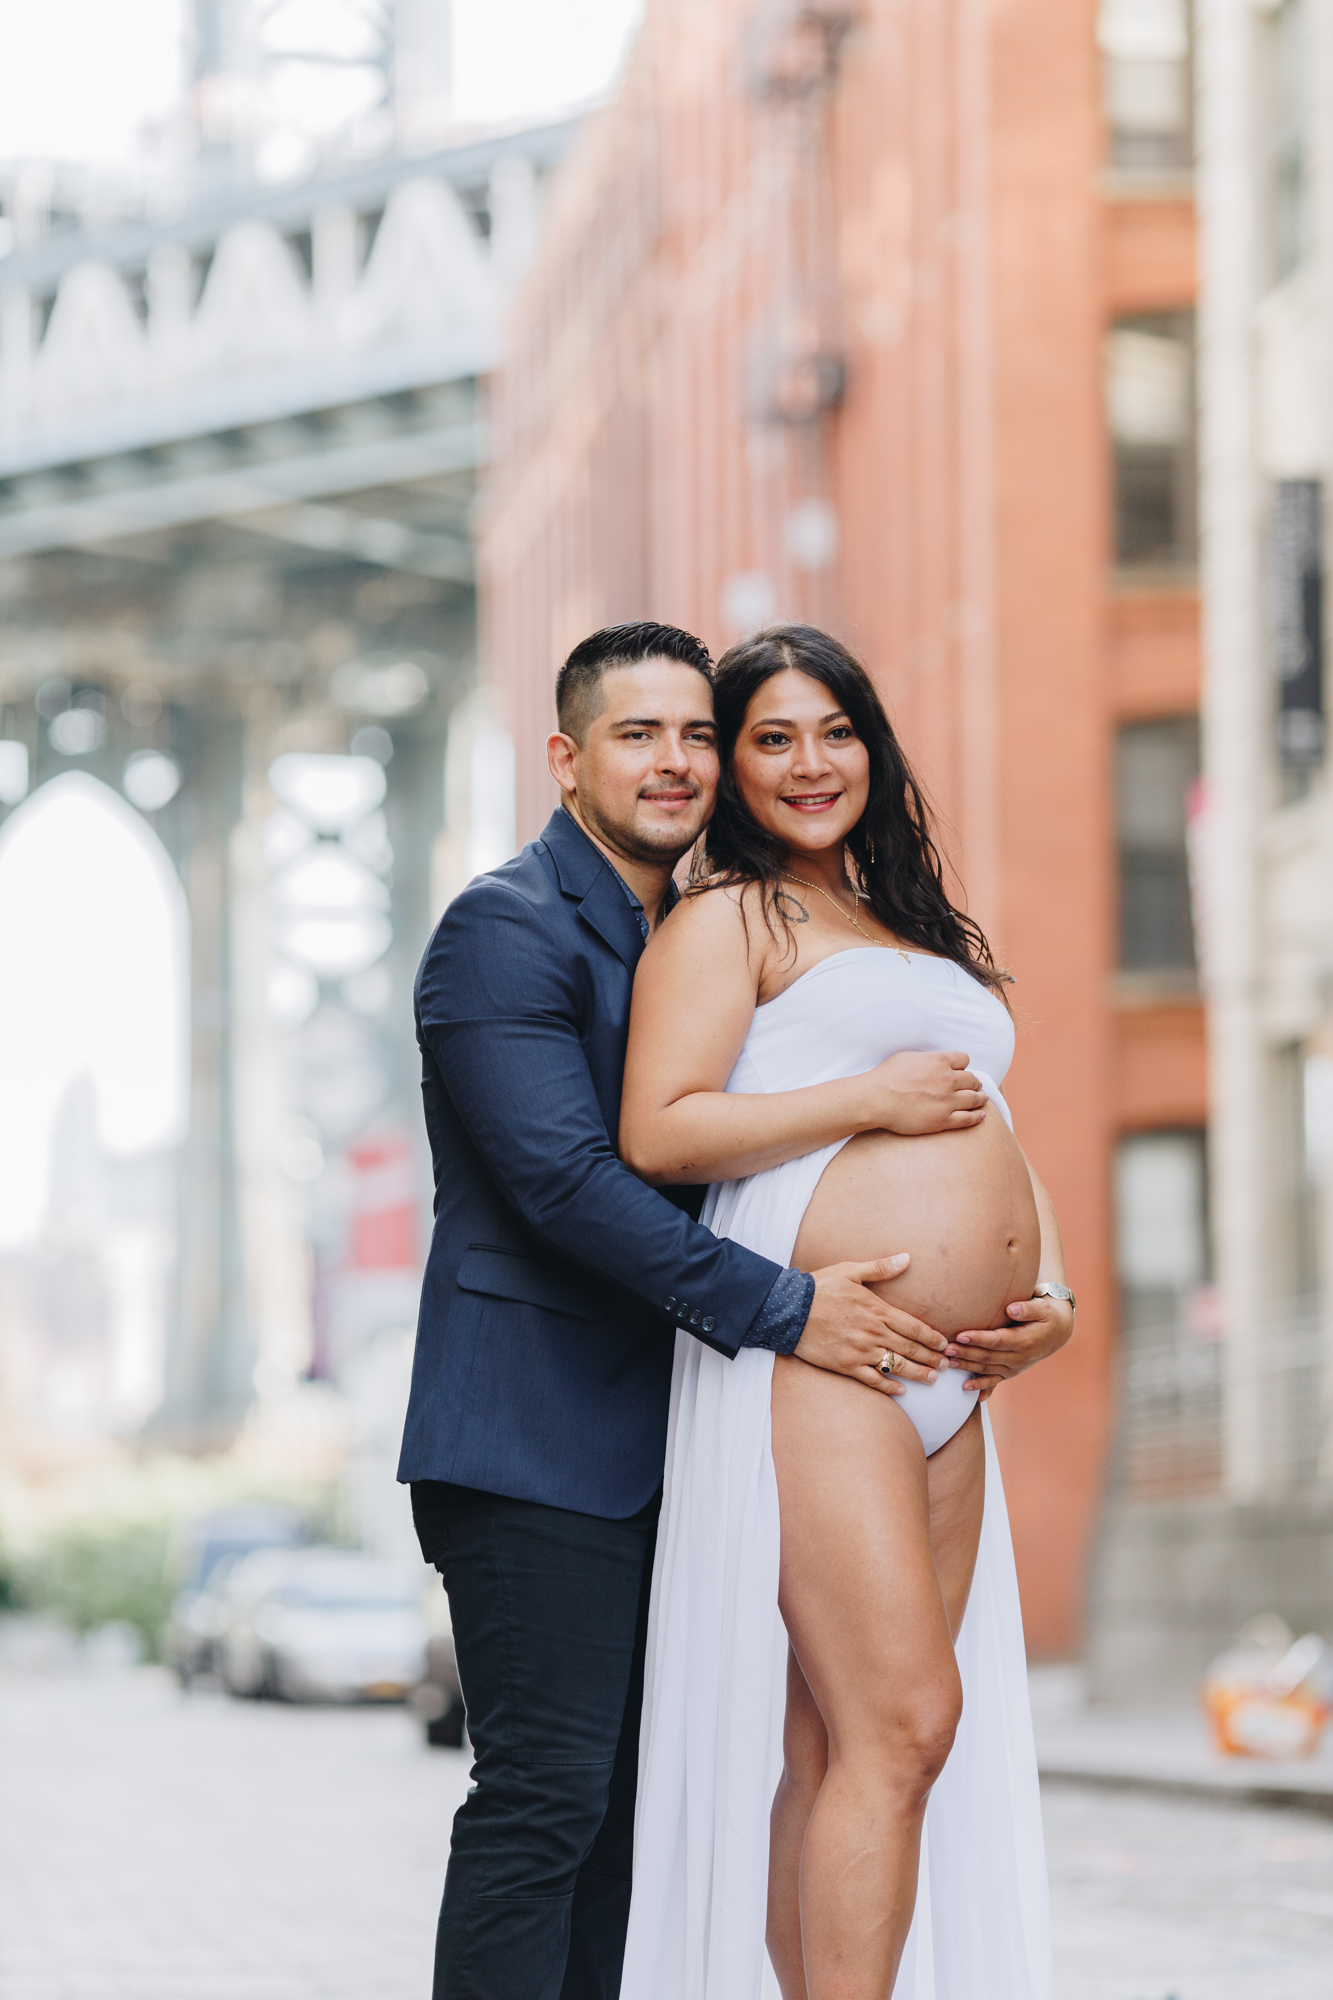 Personal Brooklyn Bridge Maternity Photos